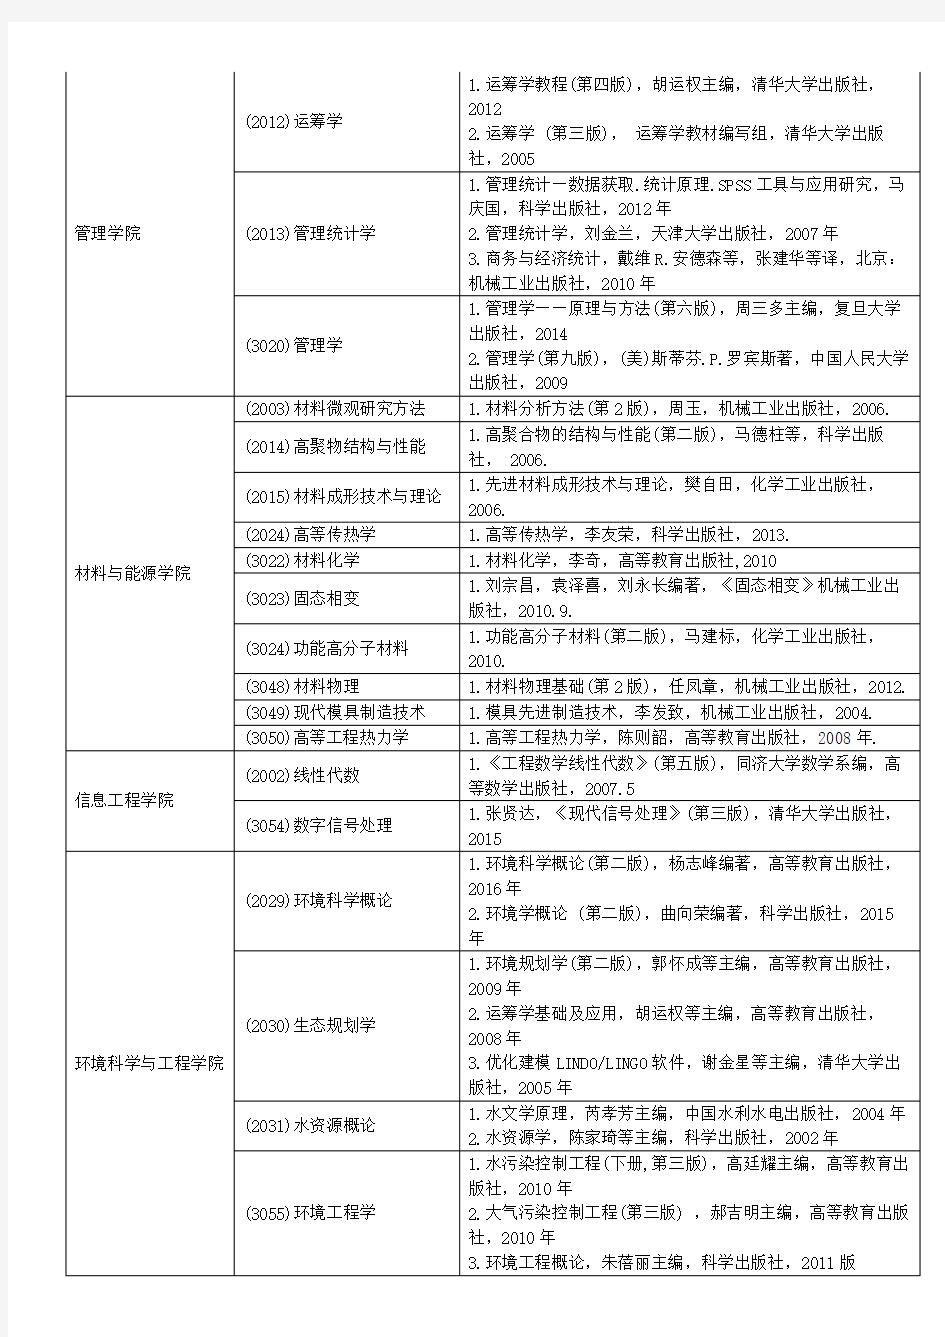 广东工业大学2019年博士研究生招生考试参考书目